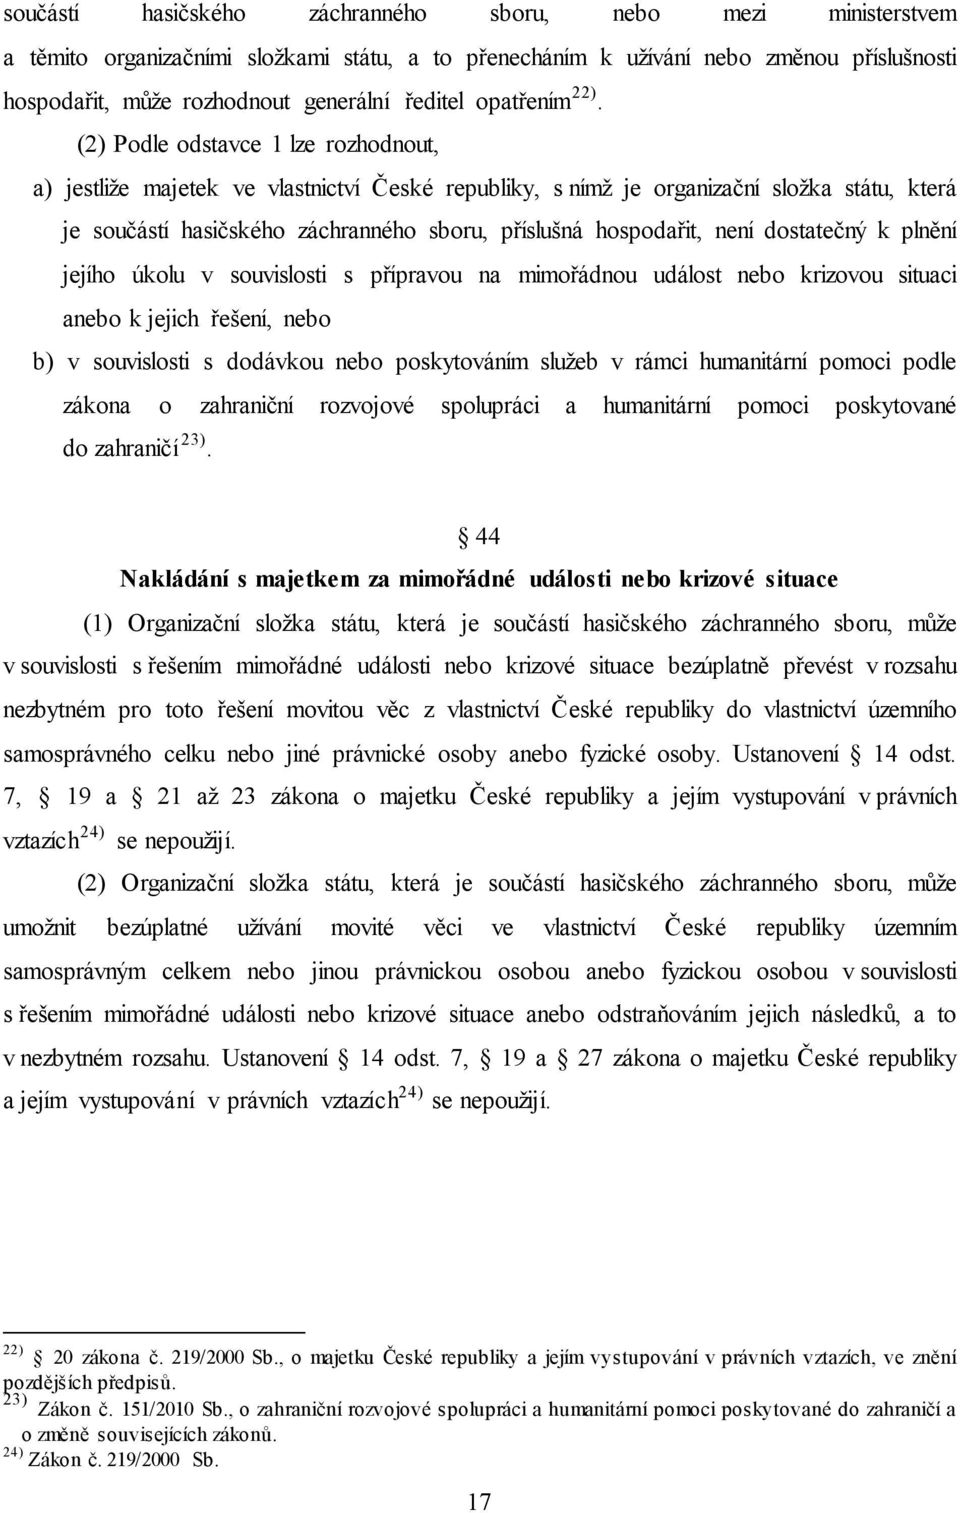 (2) Podle odstavce 1 lze rozhodnout, a) jestliže majetek ve vlastnictví České republiky, s nímž je organizační složka státu, která je součástí hasičského záchranného sboru, příslušná hospodařit, není